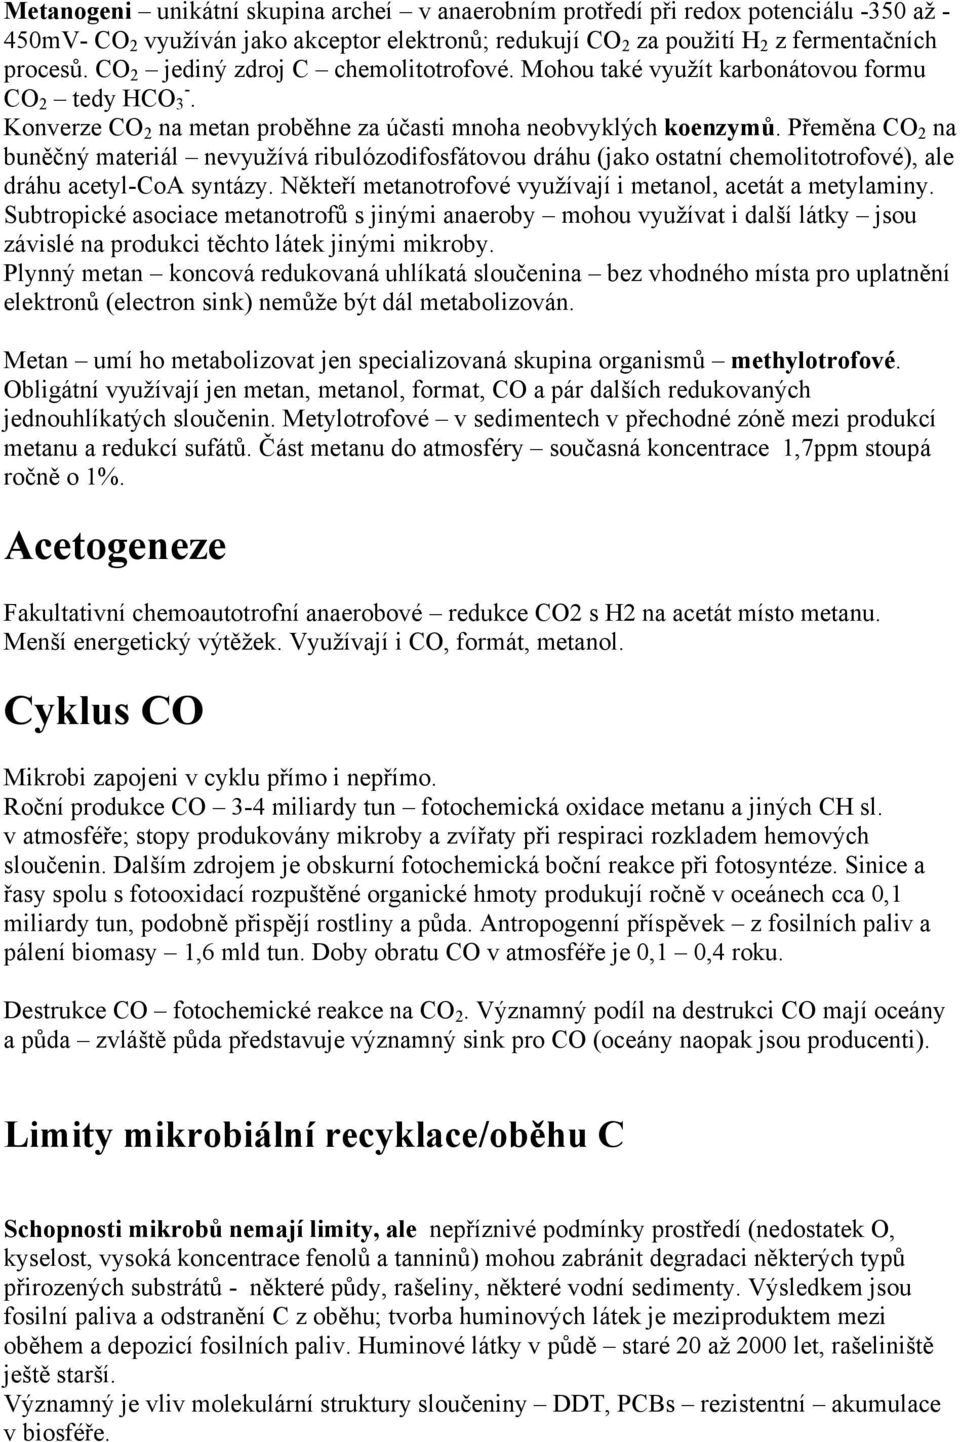 Přeměna CO 2 na buněčný materiál nevyužívá ribulózodifosfátovou dráhu (jako ostatní chemolitotrofové), ale dráhu acetyl-coa syntázy. Někteří metanotrofové využívají i metanol, acetát a metylaminy.